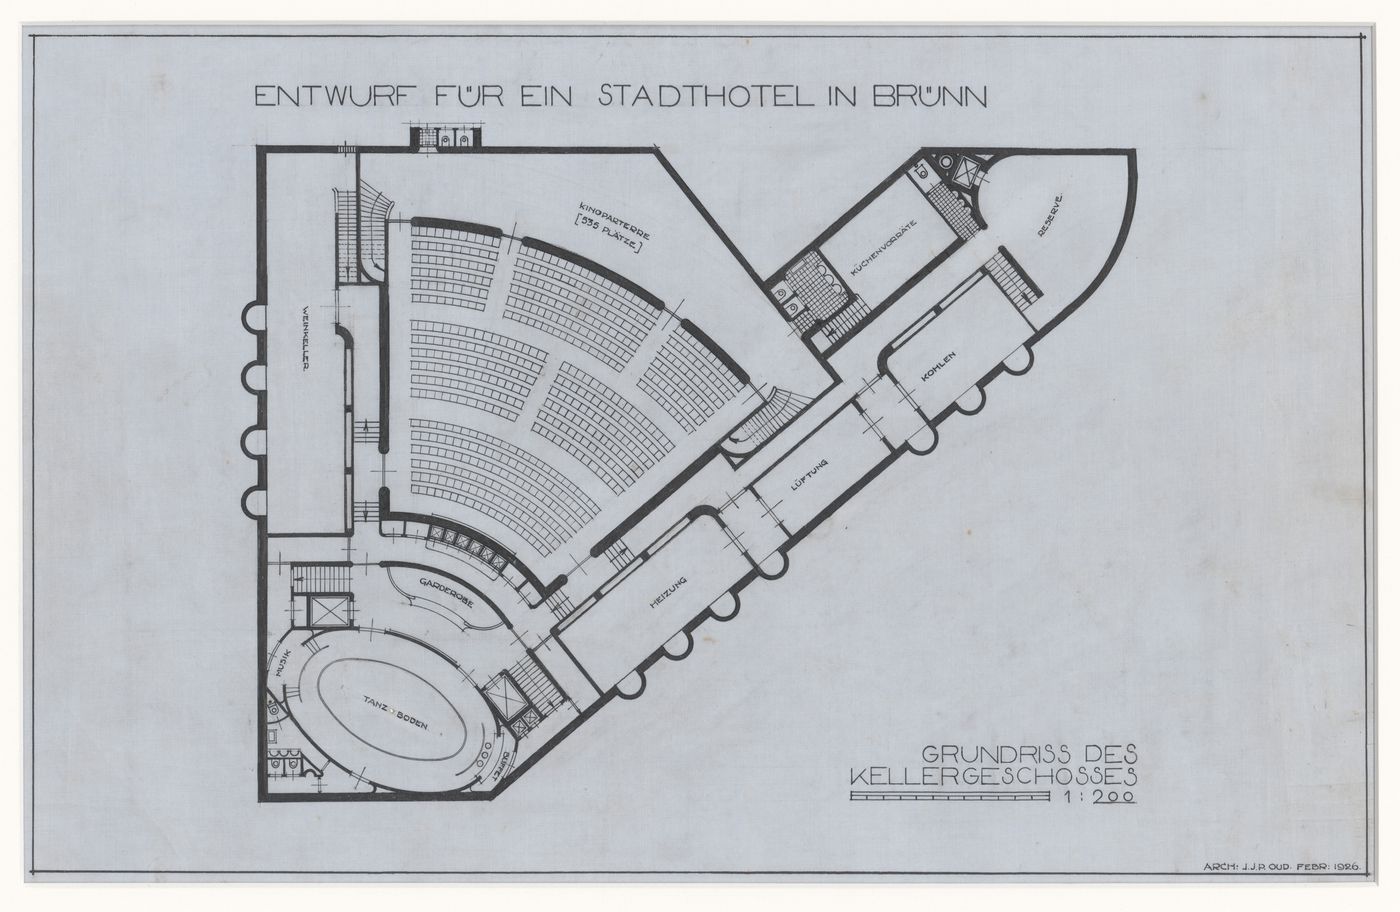 Basement plan for Hotel Stiassni, Brno, Czechoslovakia (now Czech Republic)